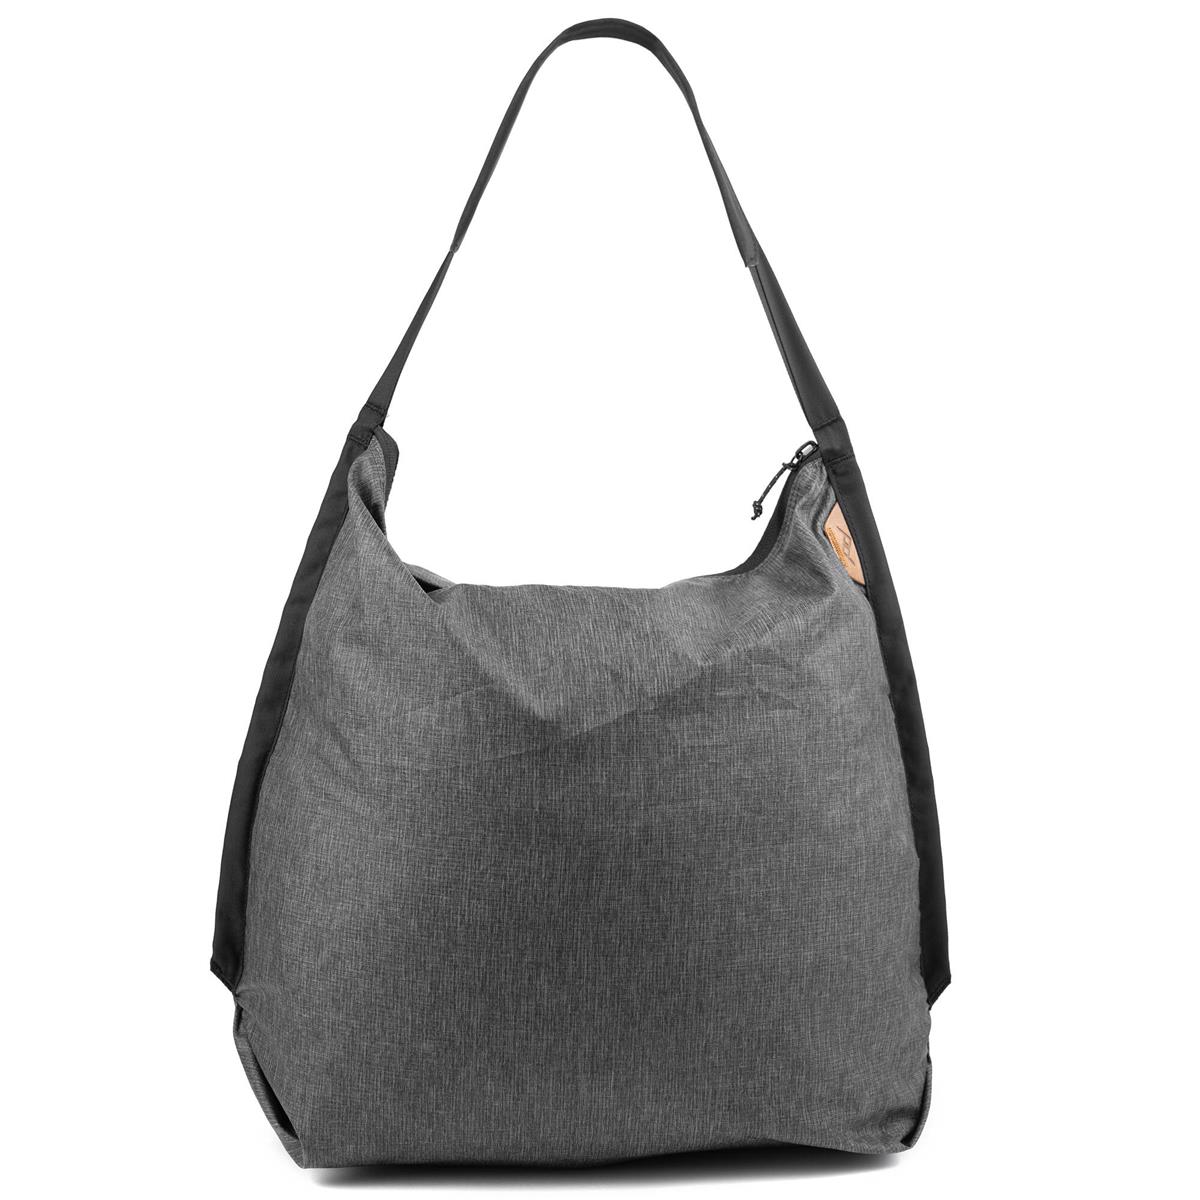 Image of Peak Design Packable Tote Bag